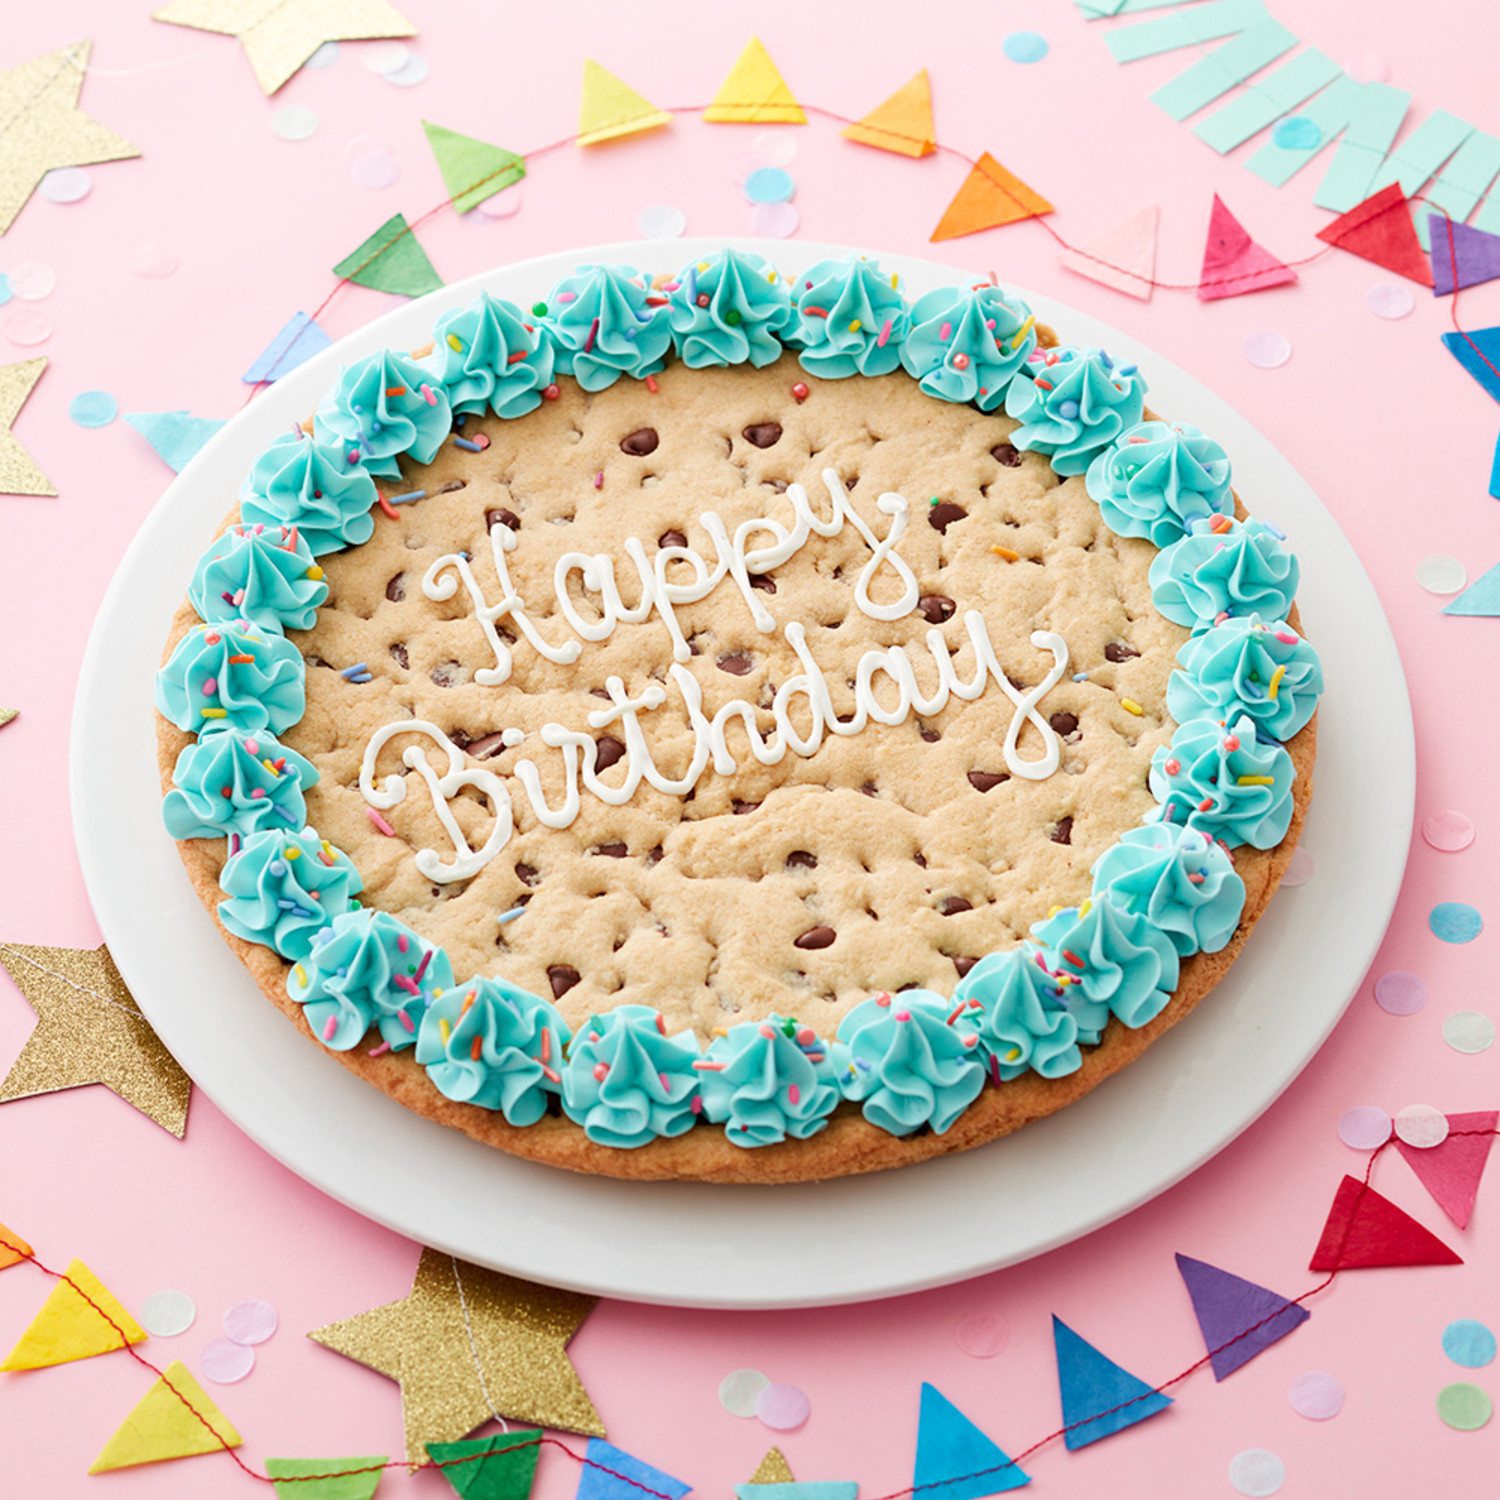 Giant Happy Birthday Cookie Cake